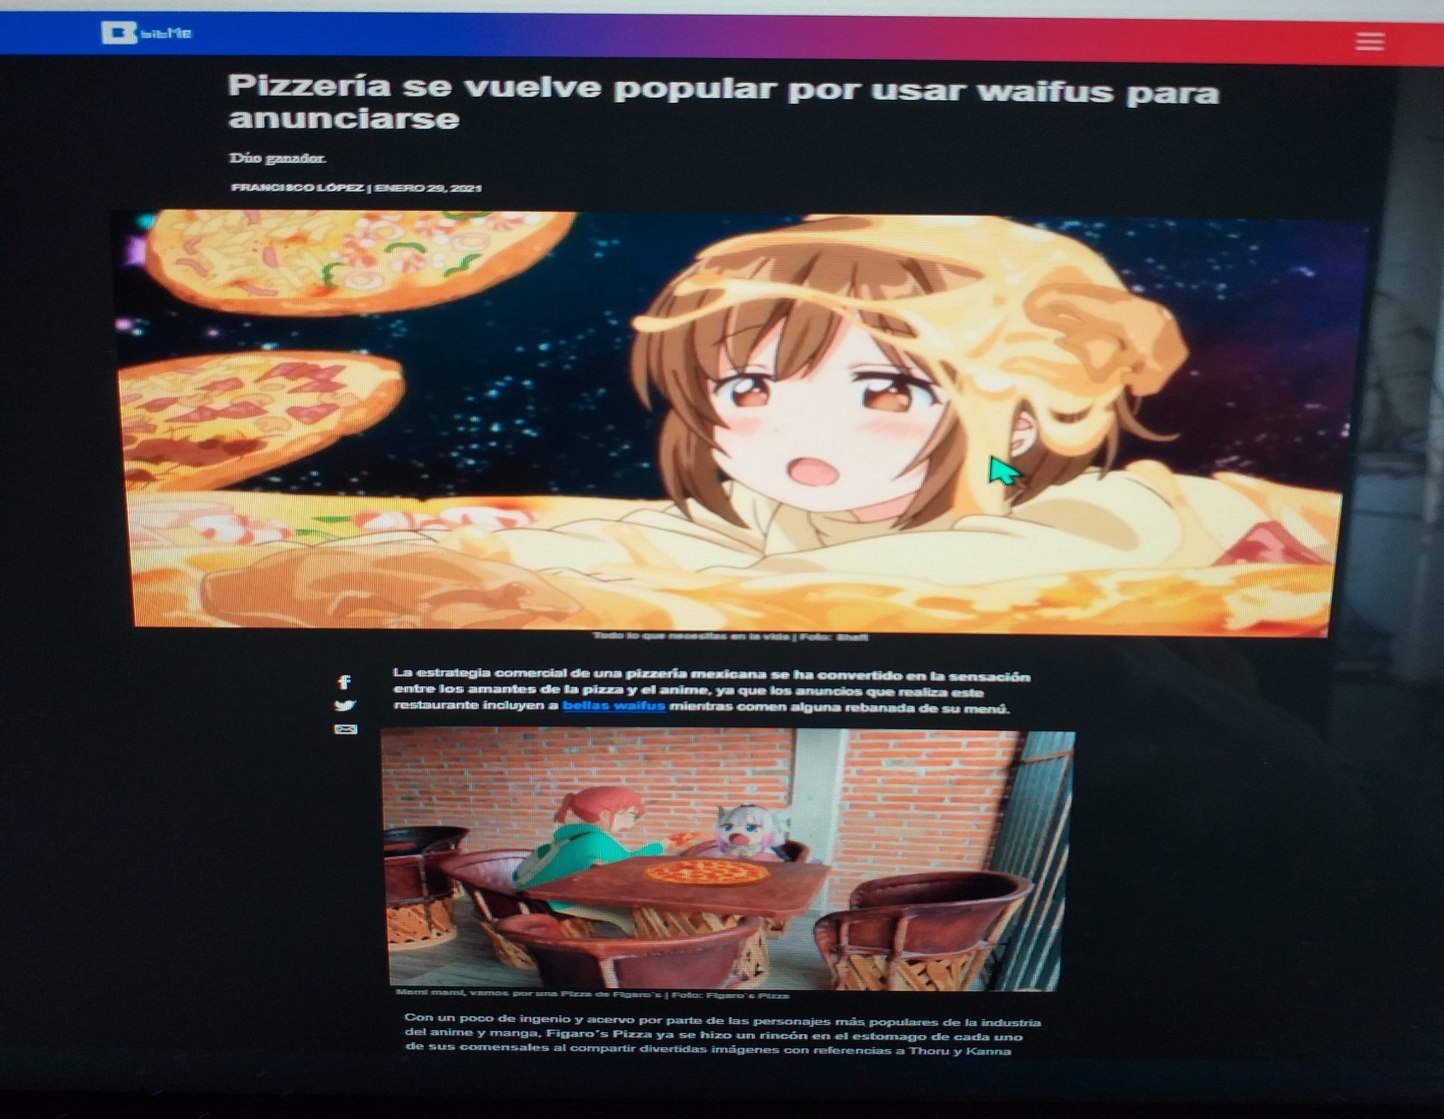 Figaros pizza y sus waifus - meme